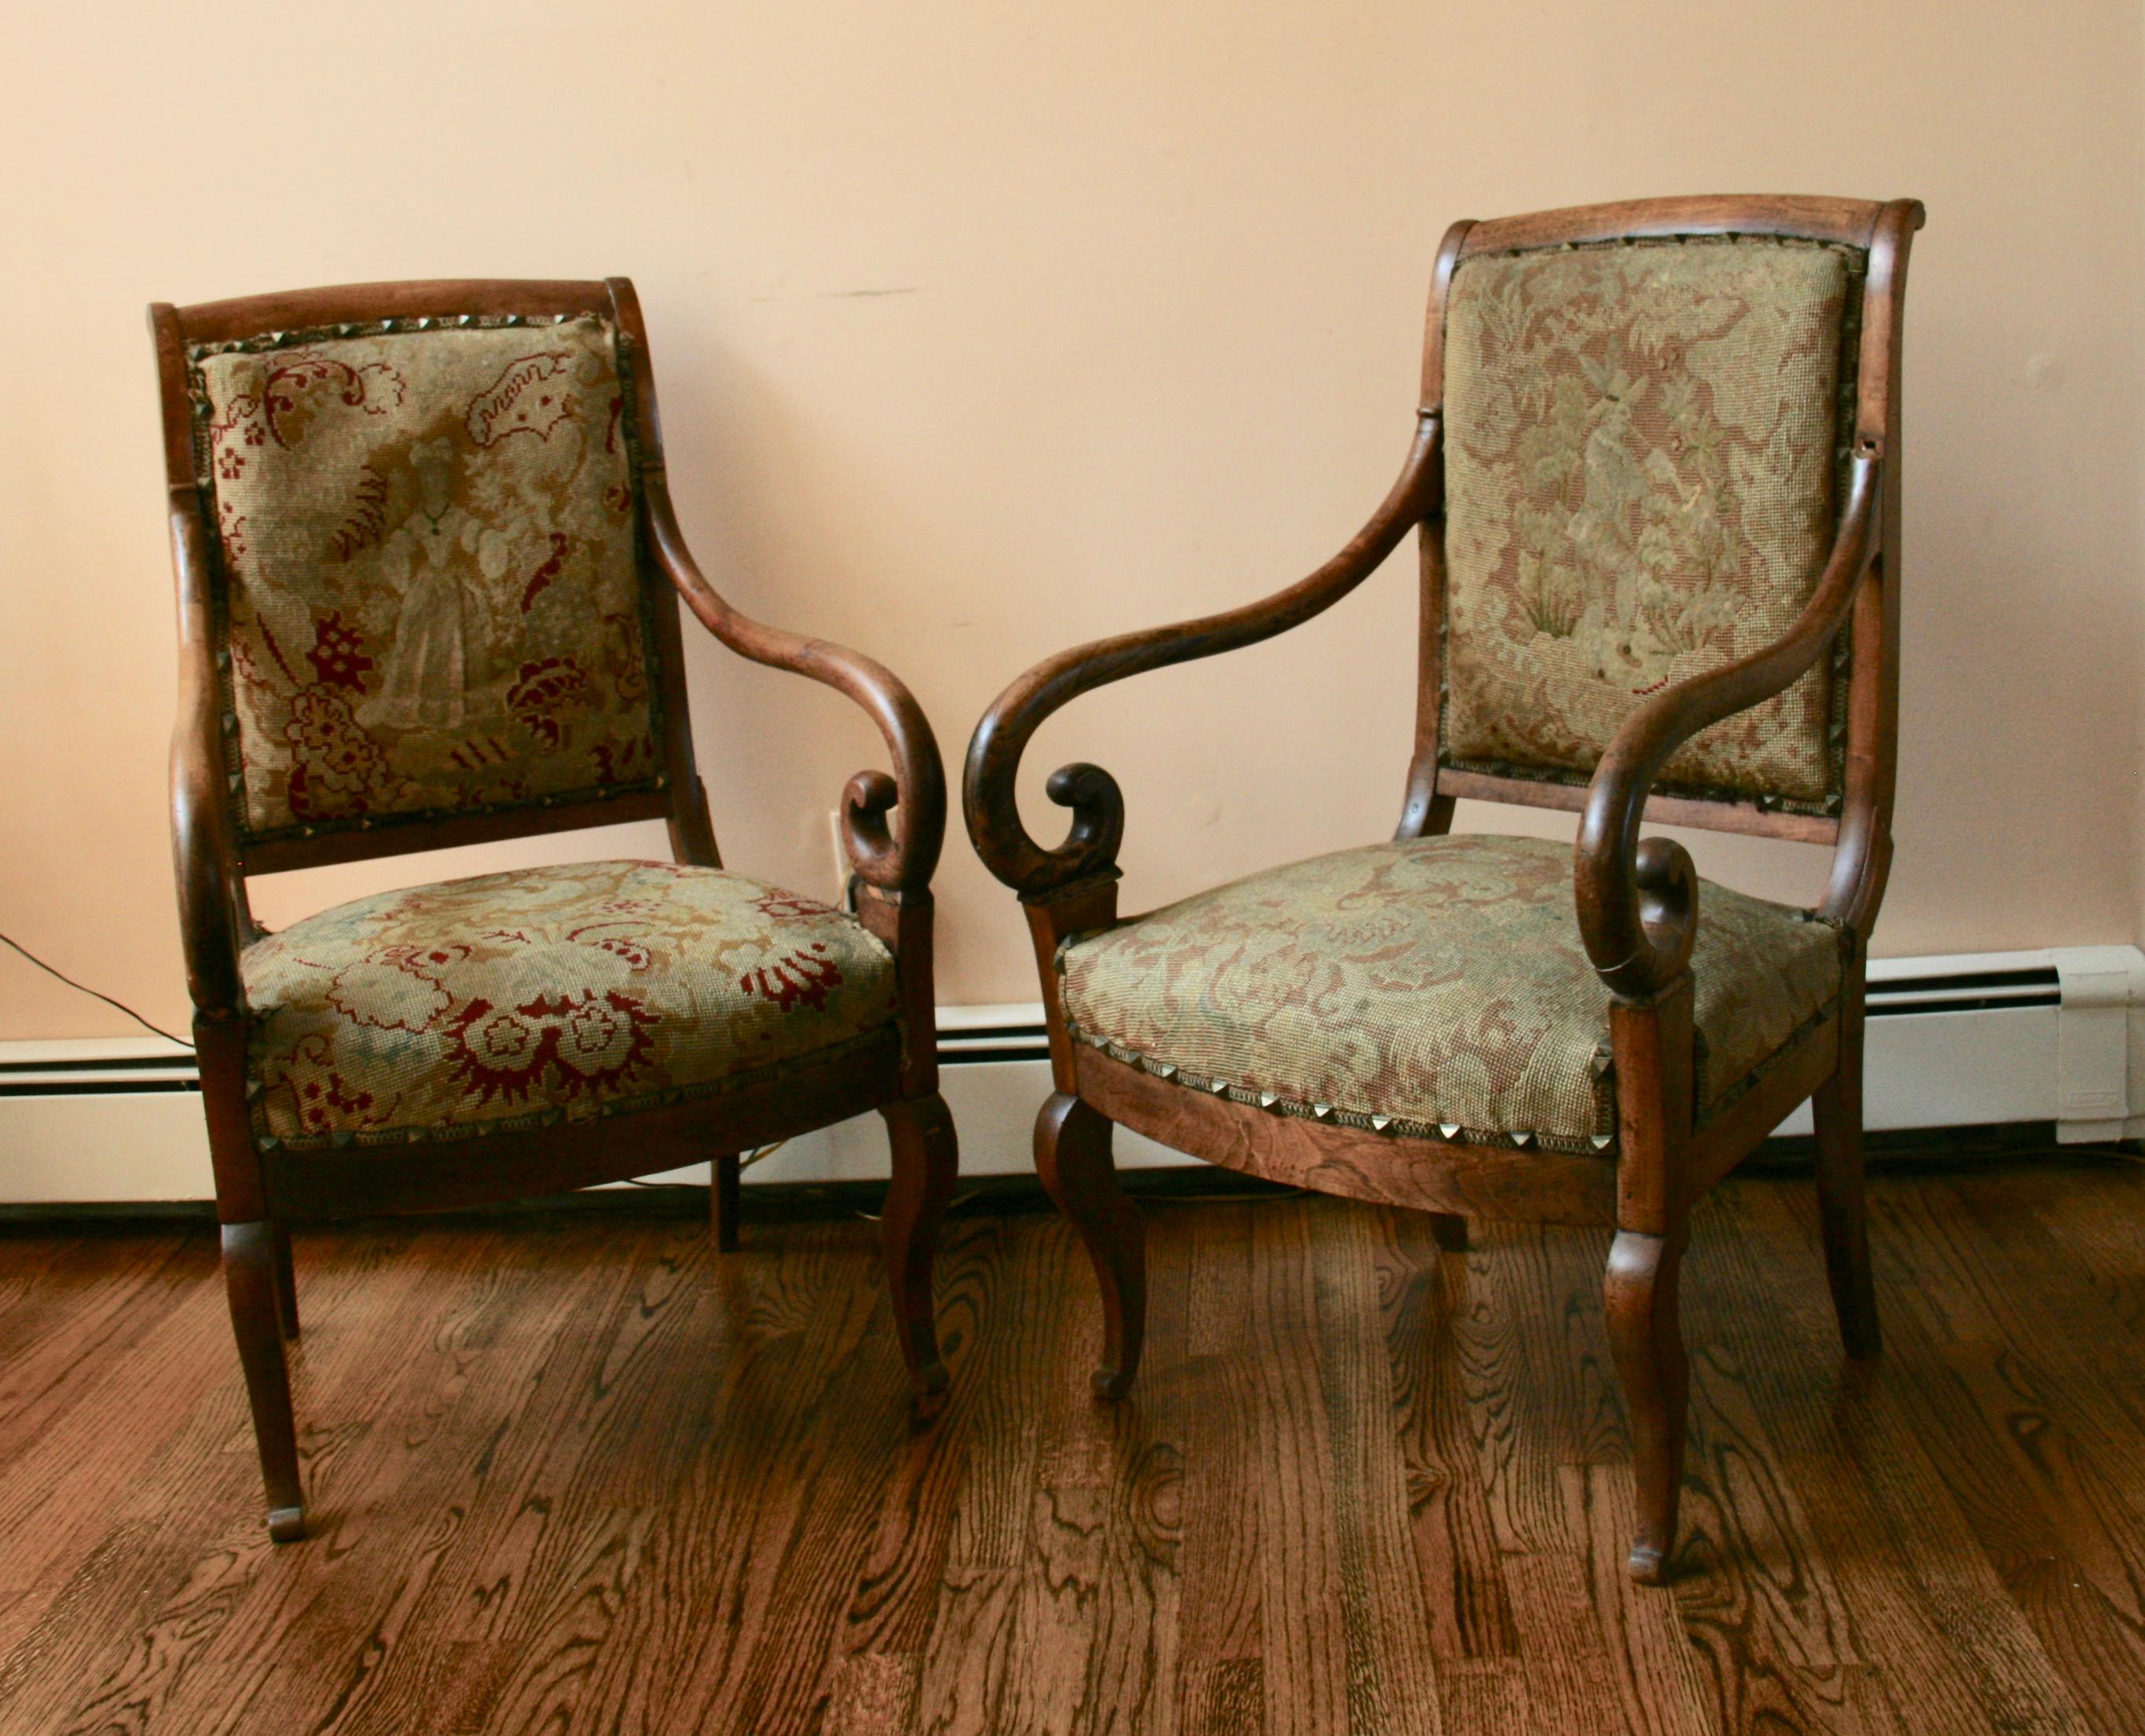 Paire de chaises italiennes en bois fruitier, ancienne paire de chaises italiennes en bois fruitier magnifiquement courbées avec leur tapisserie d'origine  rembourrage. Une chaise présente plus de décoloration. Structure saine, tapisserie à